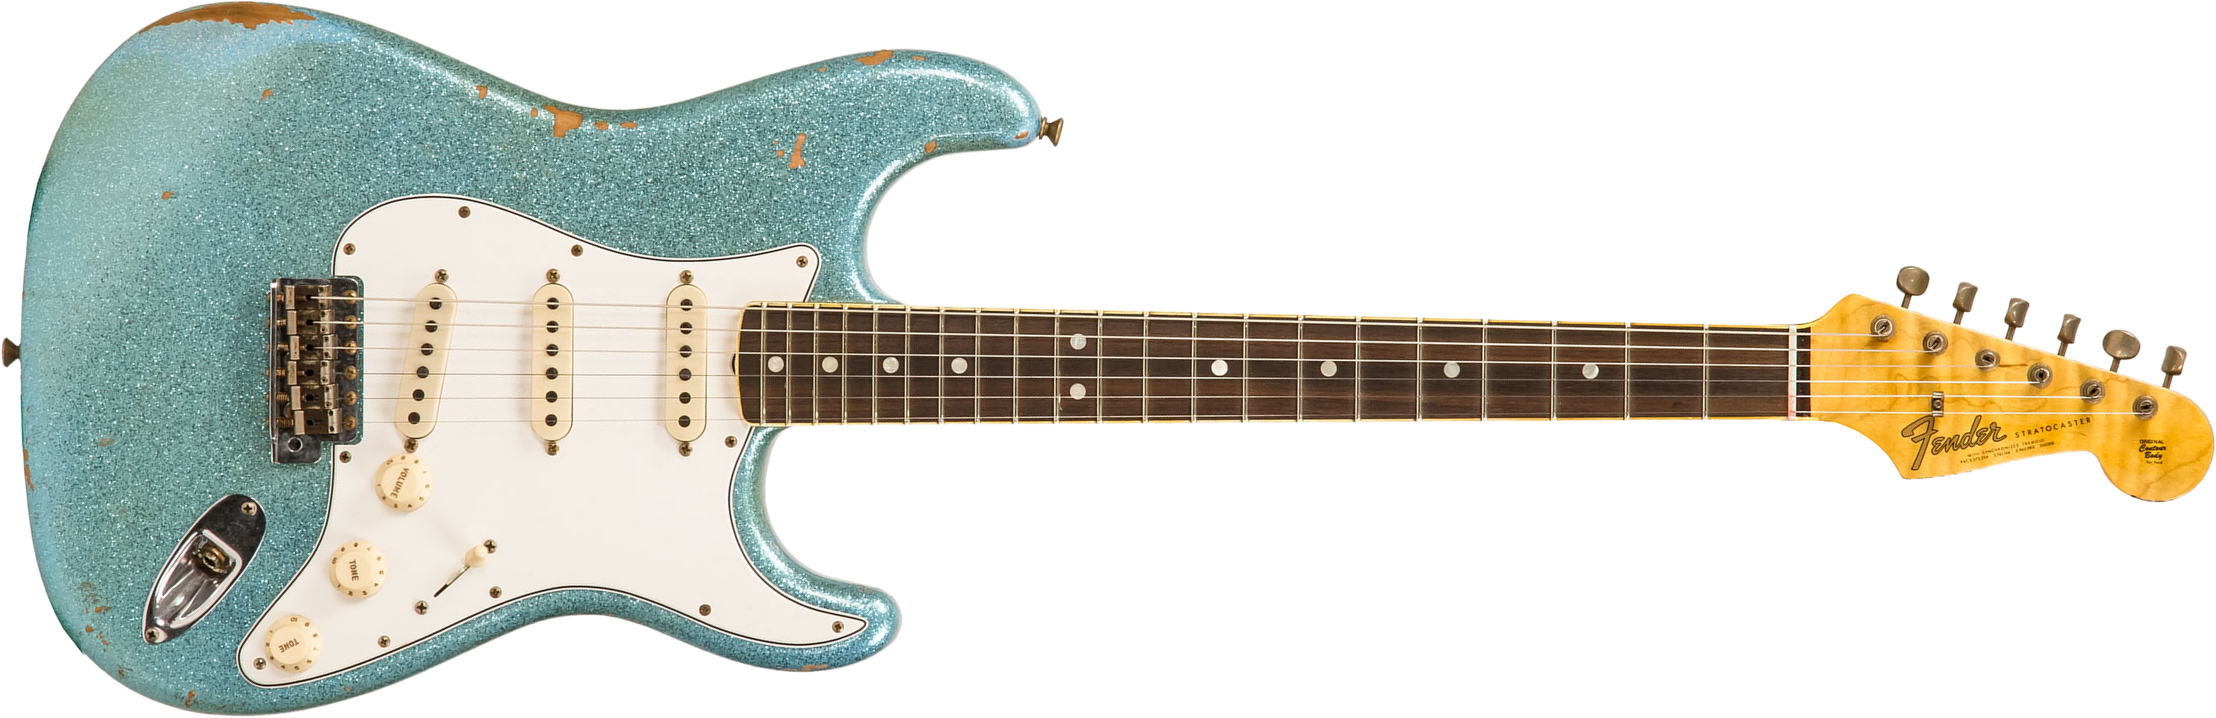 Fender Custom Shop Strat 1965 Ltd Usa Rw #cz548544 - Relic Daphne Blue Sparkle - Guitare Électrique Forme Str - Main picture